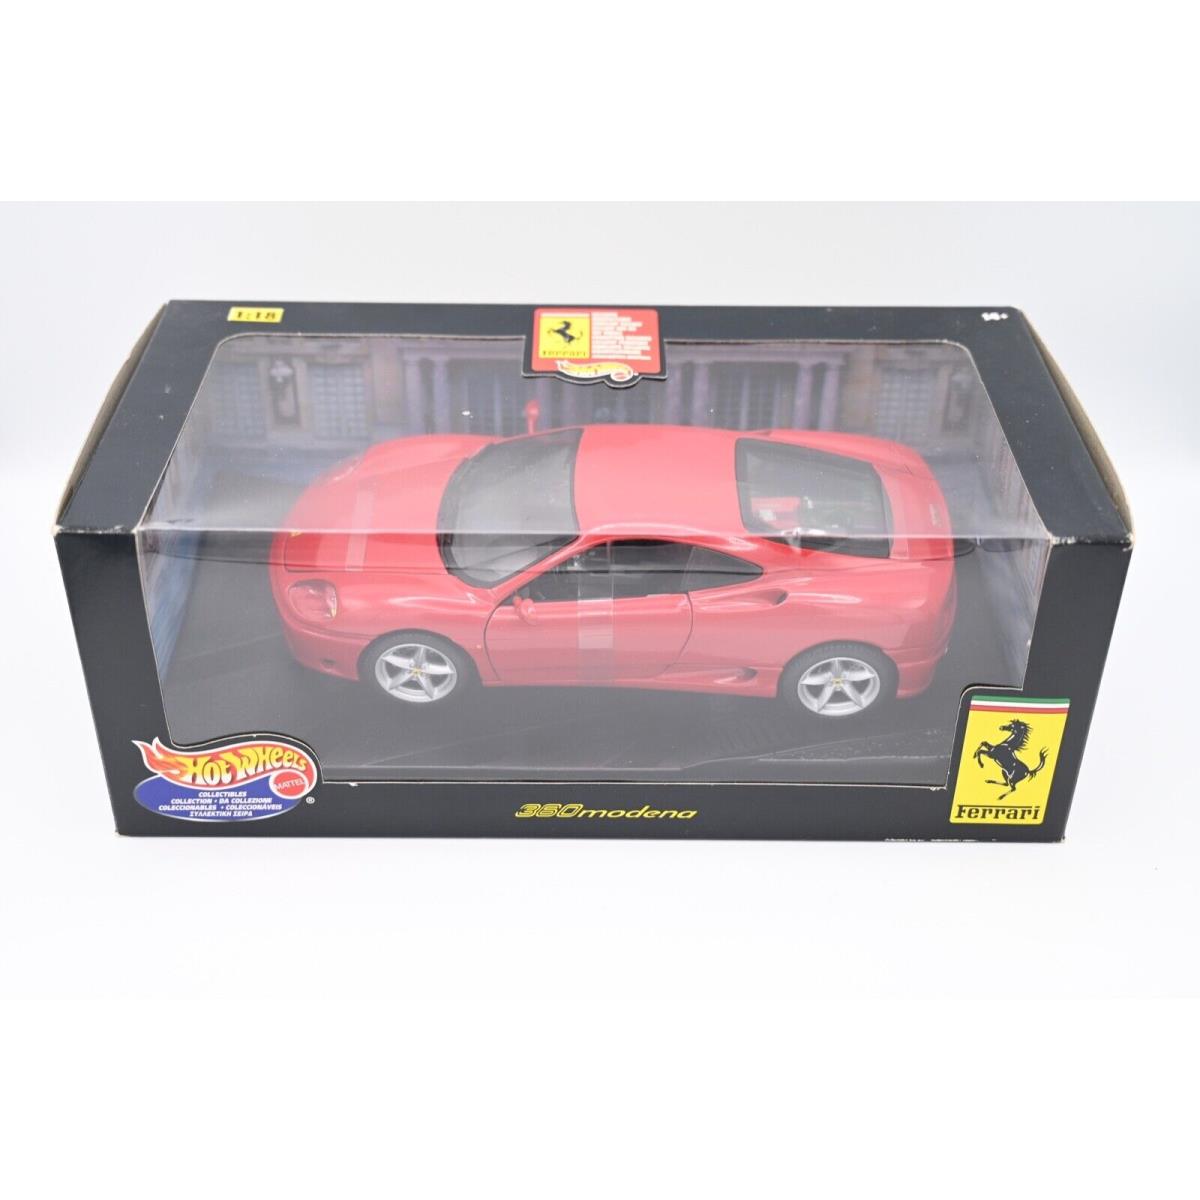 Hotwheels Ferrari 360 Modena Red 1:18 Scale 29441